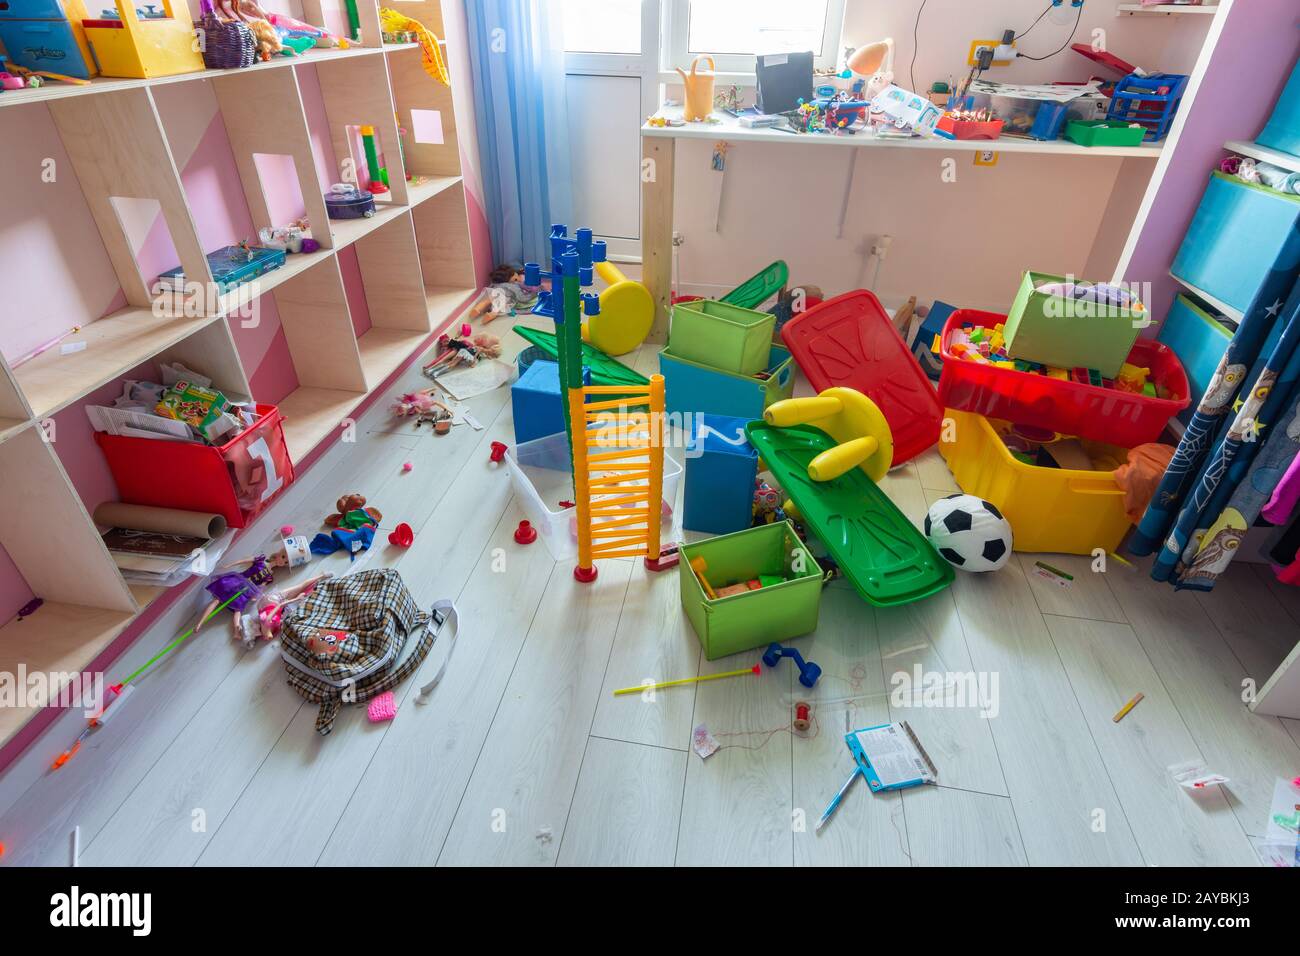 Anapa, Russia - 8 Agosto 2019: il disordine nella stanza dei bambini, sparsi giocattoli, scatole sul pavimento Foto Stock